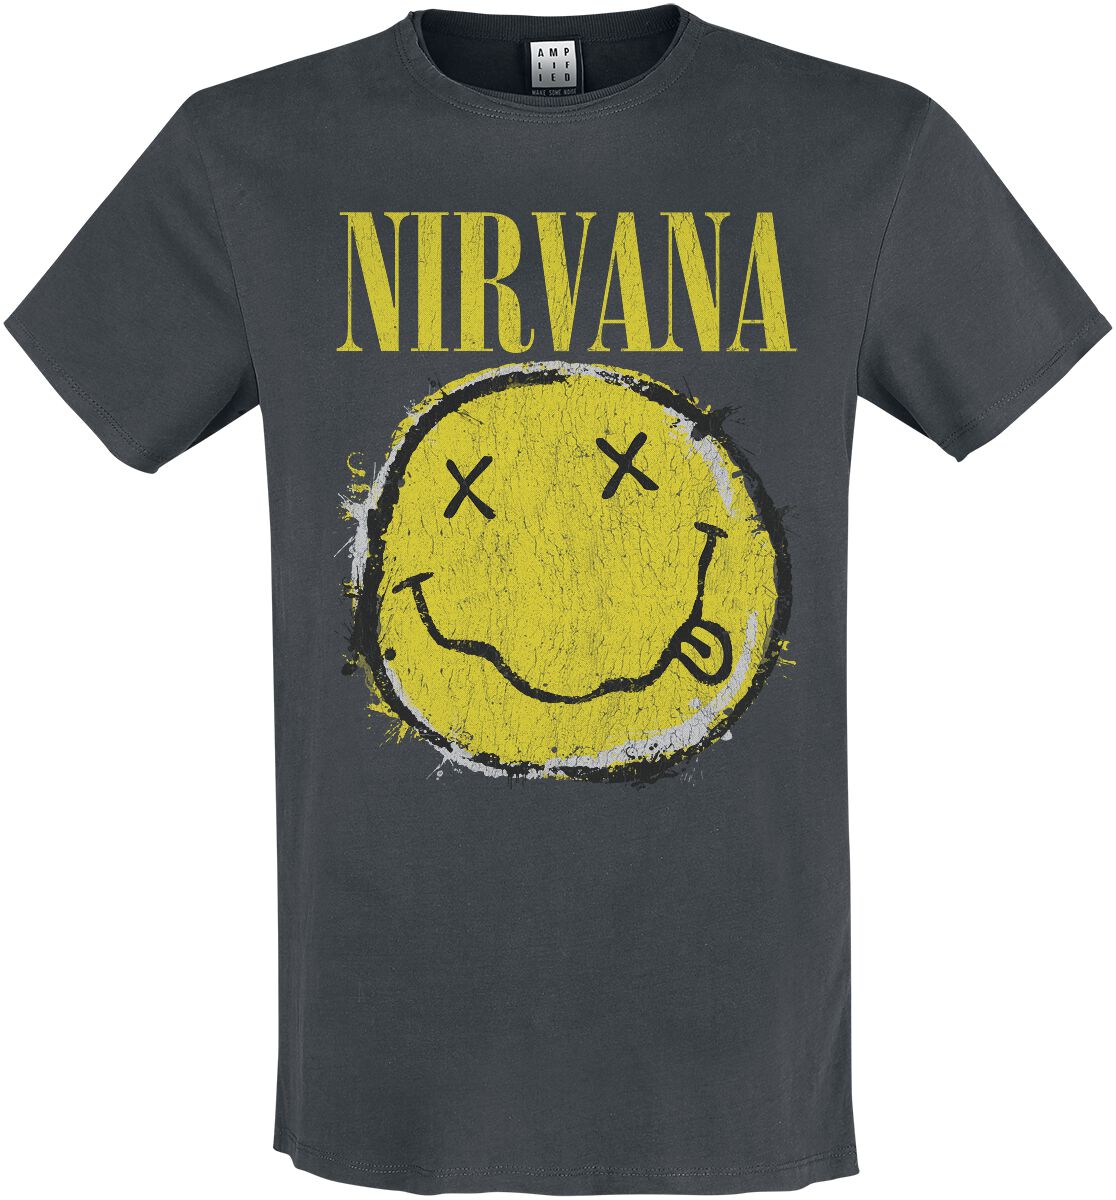 Nirvana T-Shirt - Amplified Collection - Worn Out Smiley - S bis 3XL - für Männer - Größe L - charcoal  - Lizenziertes Merchandise!